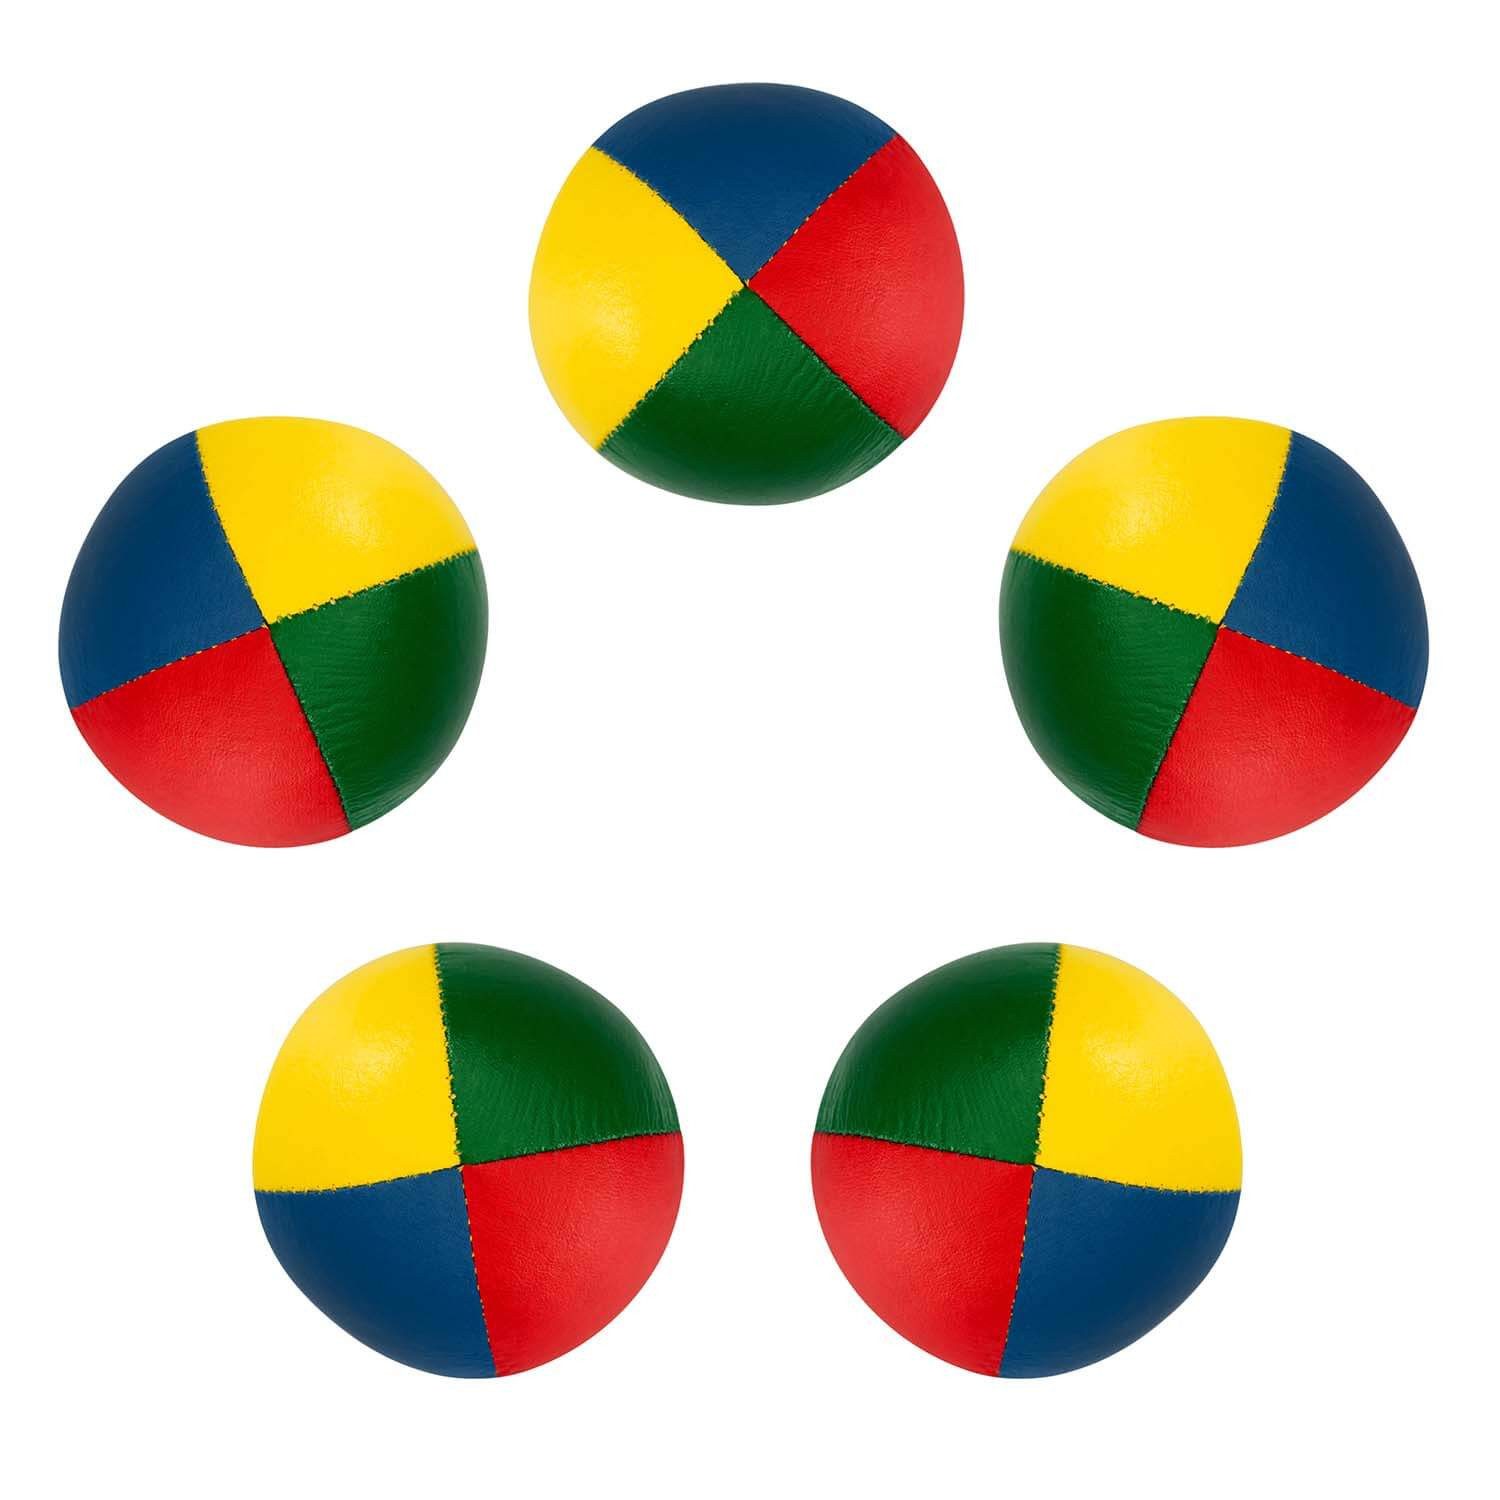 Diabolo Freizeitsport Spielball zum Jonglieren (5er Set 58mm Jonglierbälle, 90g vierfarbig)